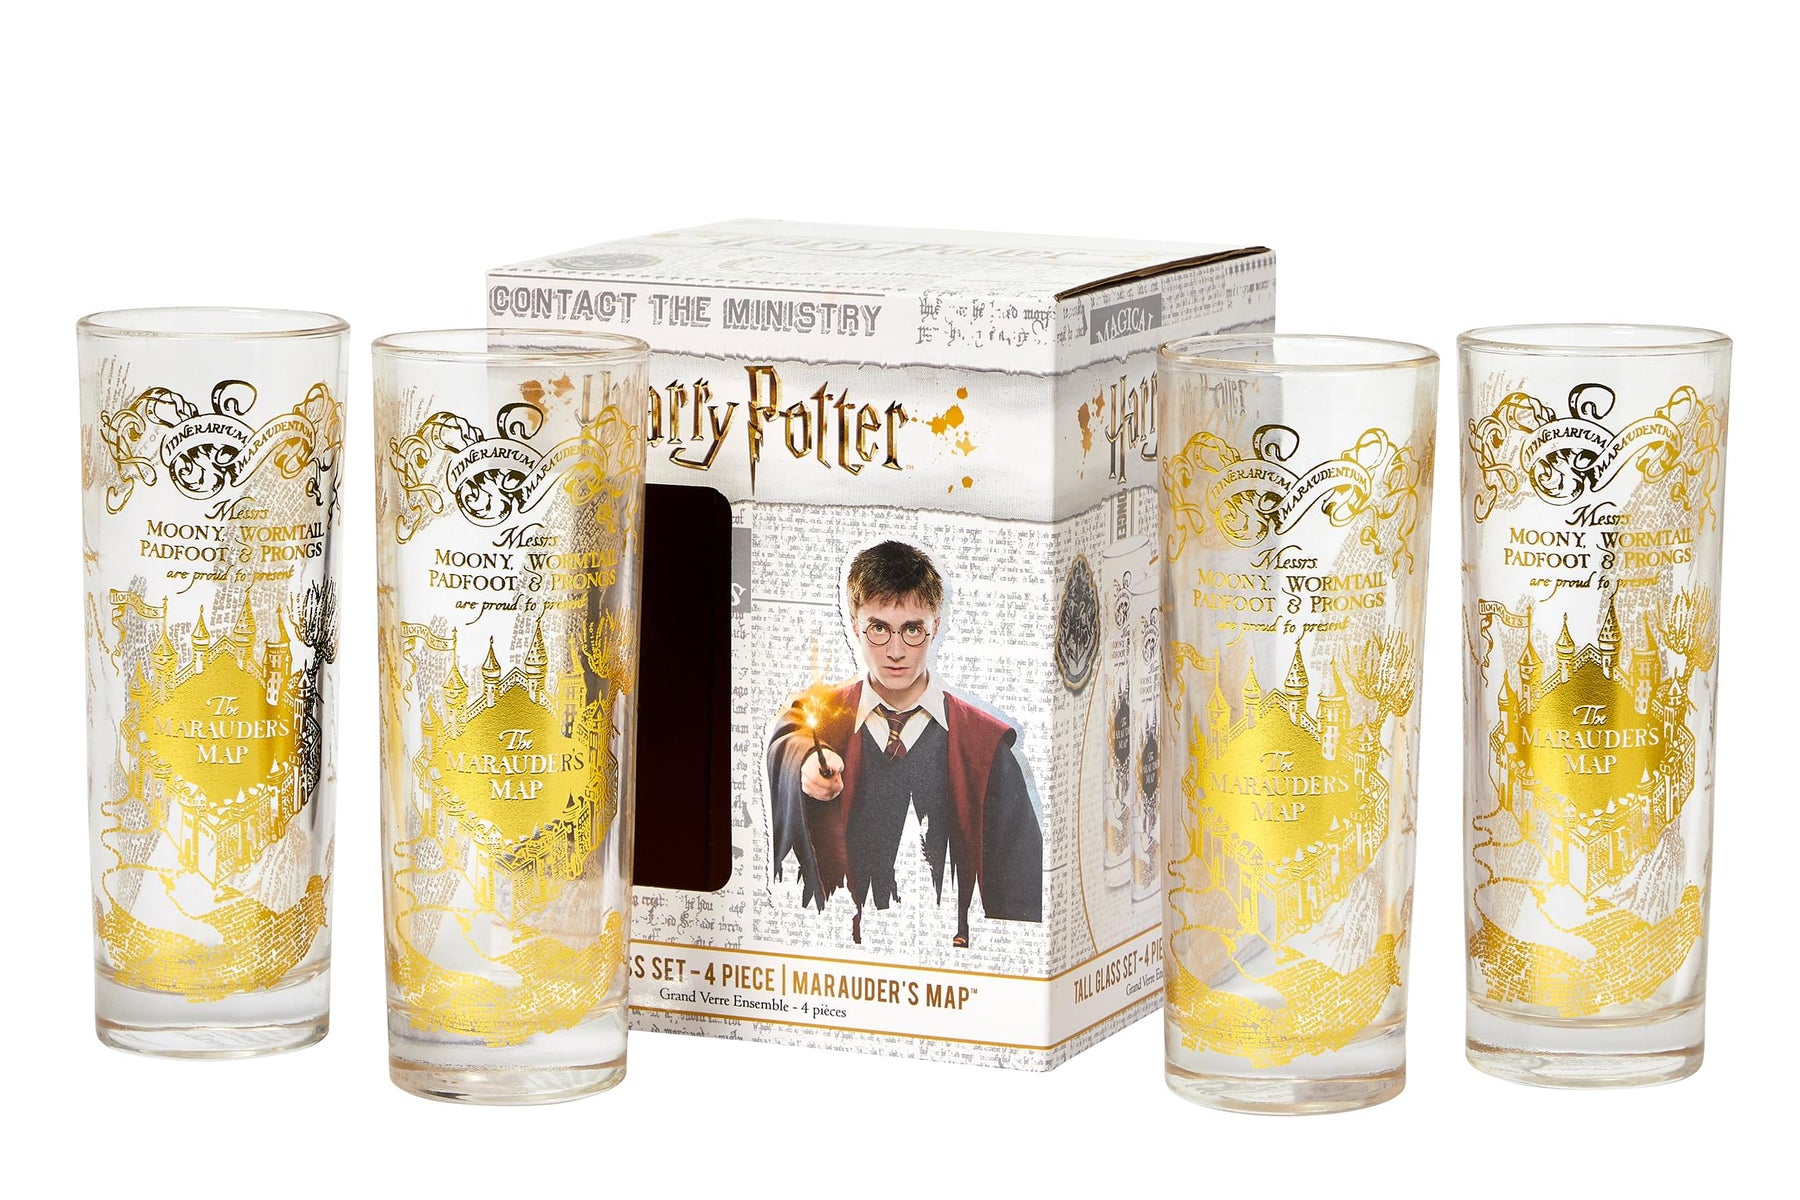 Harry Potter Marauder's Map 8-Oz Highball Glasses | Set of 4